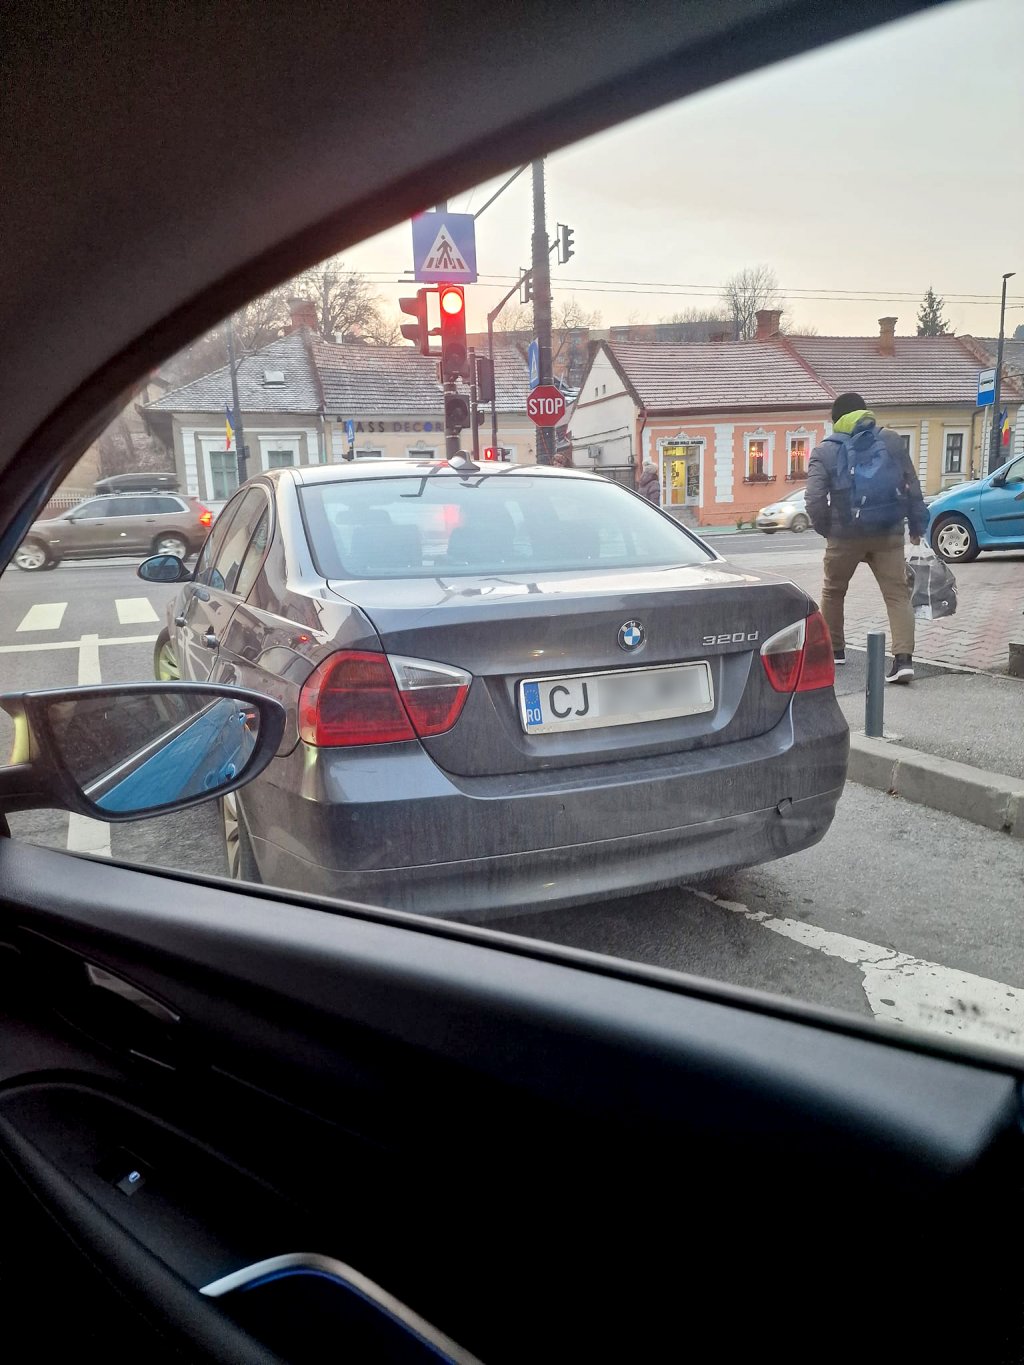 RUPE-ŢI PERMISUL, etapa cu BMW-ul parcat în faţa semaforului, pe banda de circulaţie